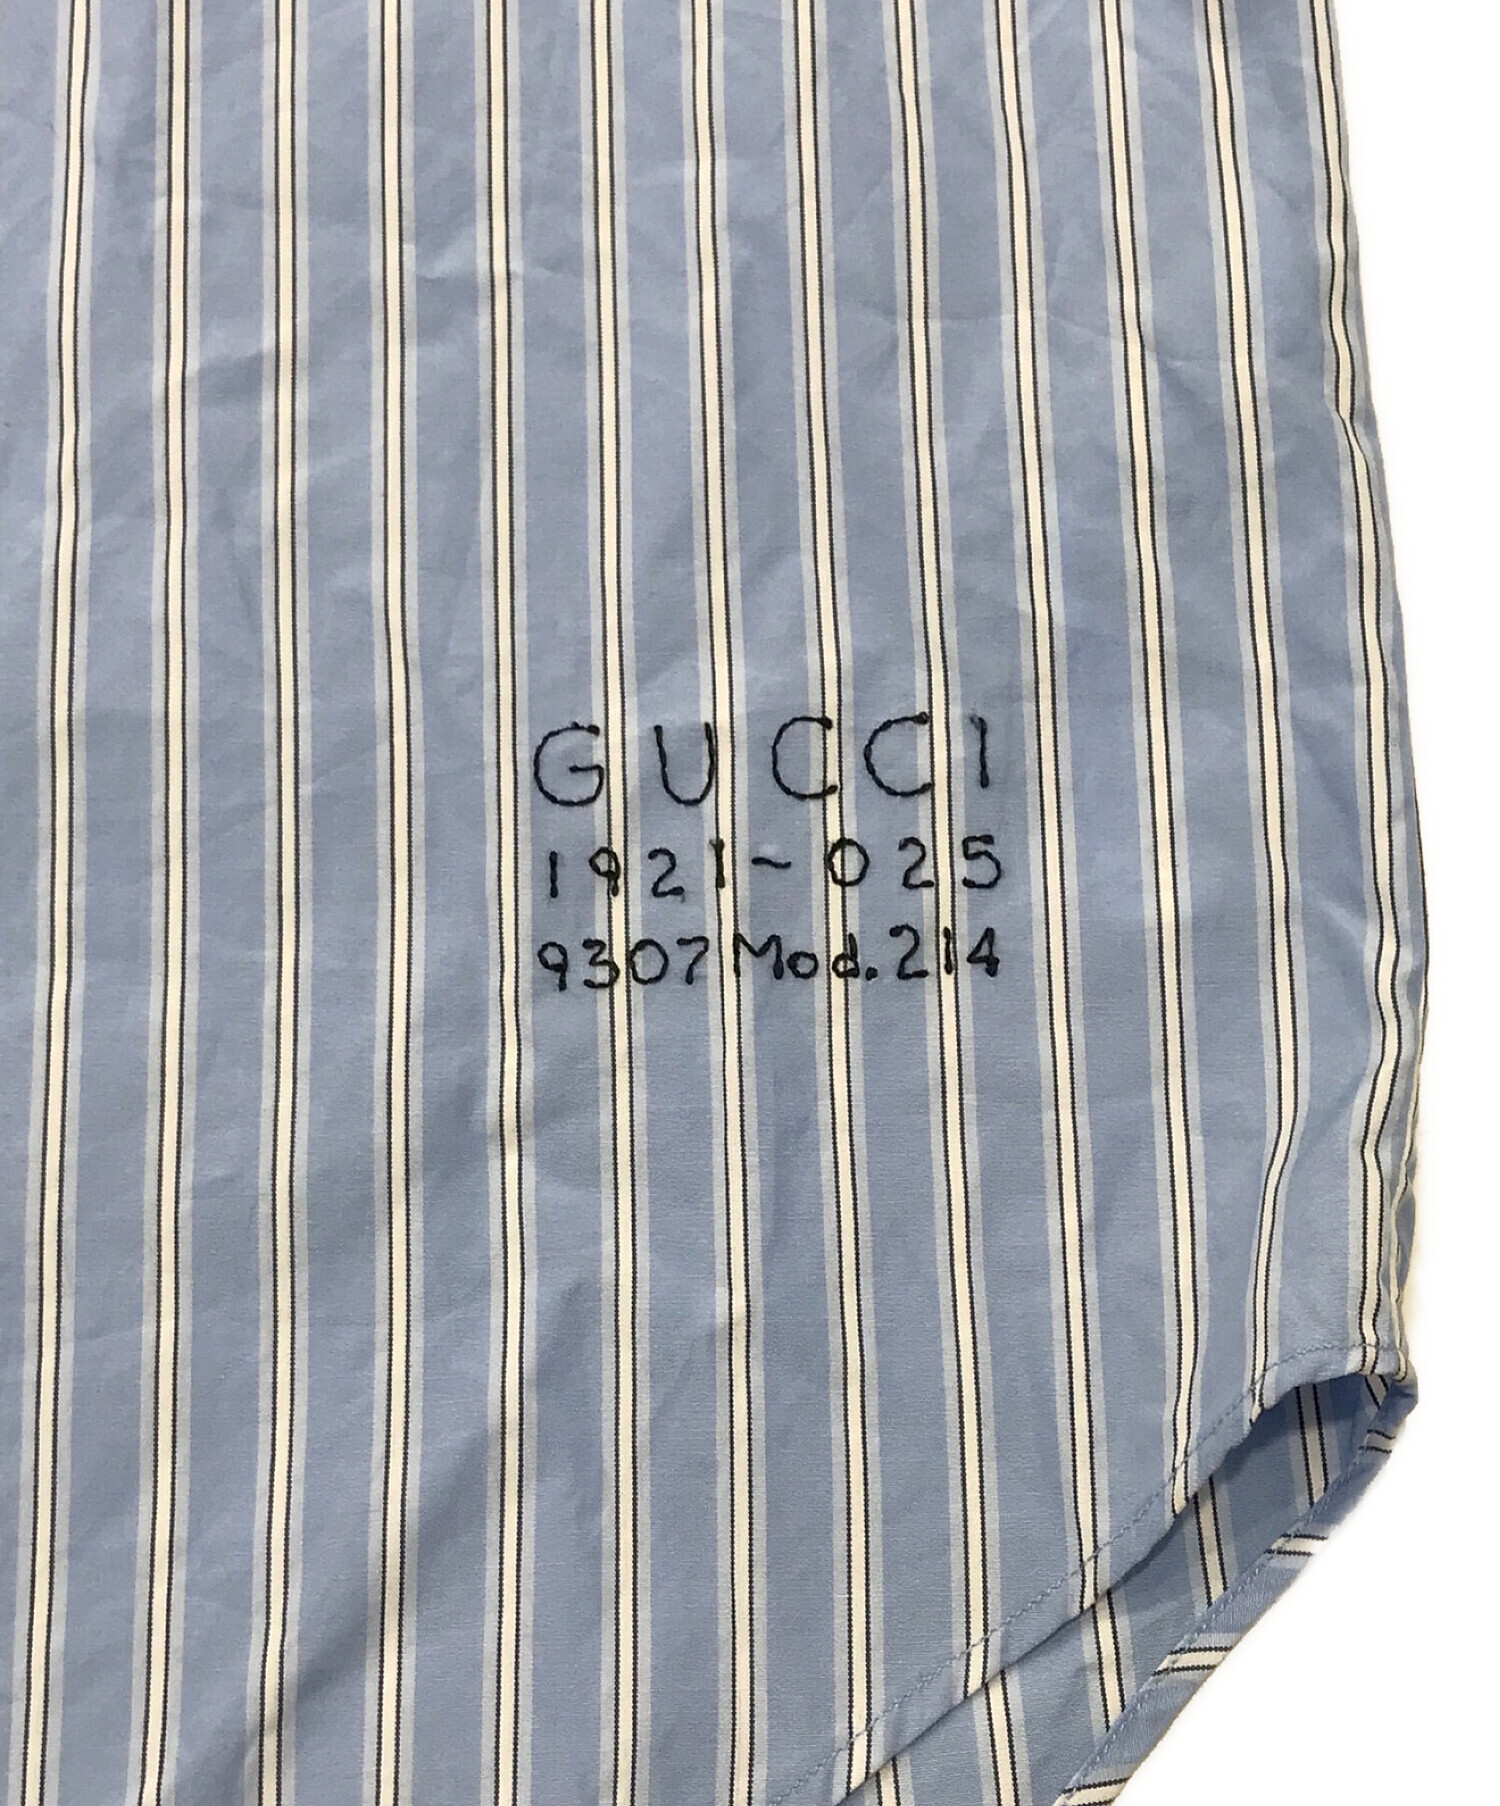 GUCCI (グッチ) ロゴ刺繍ストライプシャツ ブルー サイズ:46